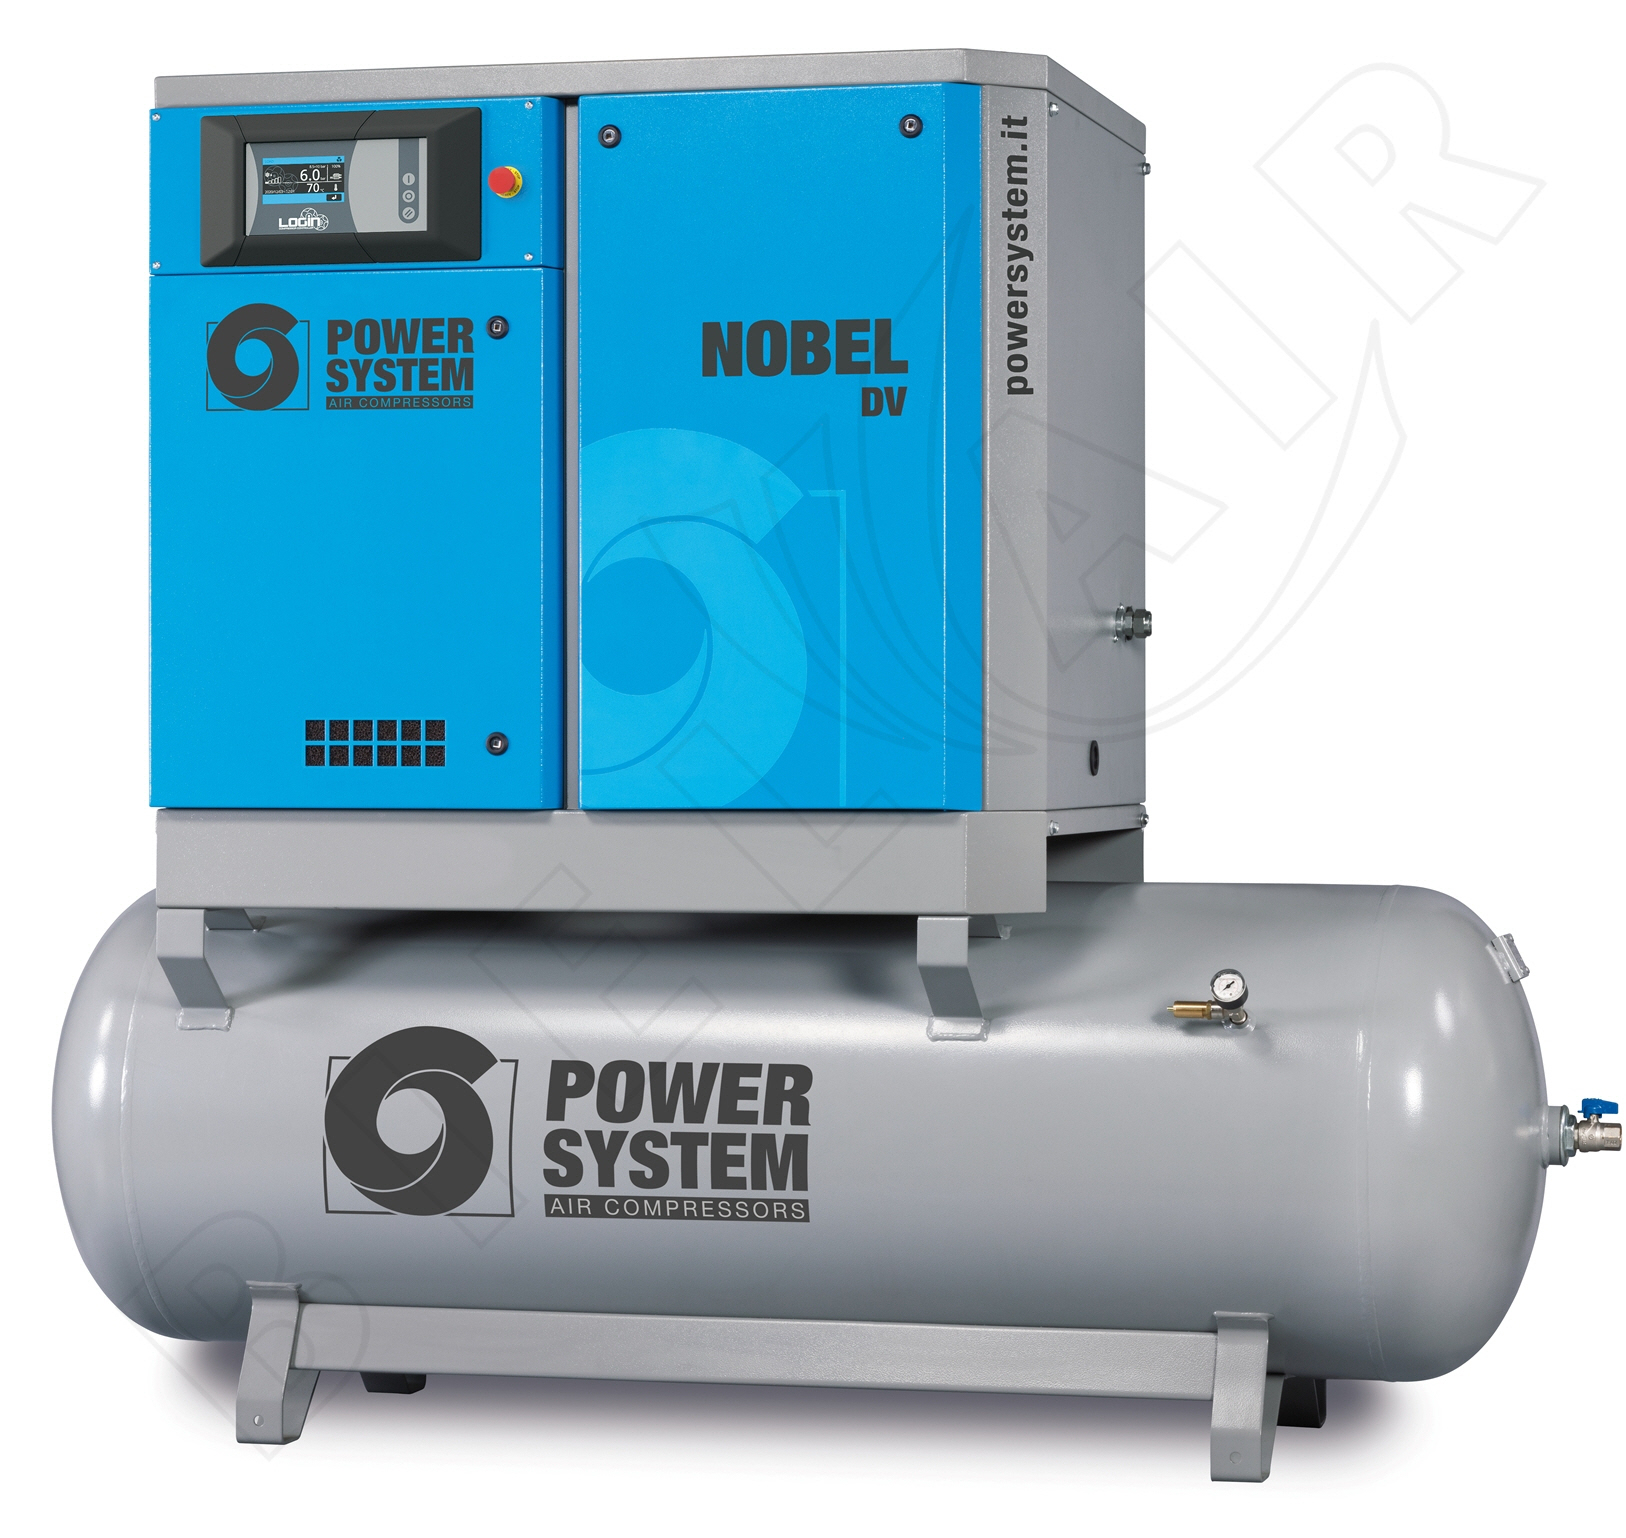 POWERSYSTEM Schraubenkompressor NOBEL 11-10 500 DV (IE3) LOGIN Frequenzgesteuert mit Behälter